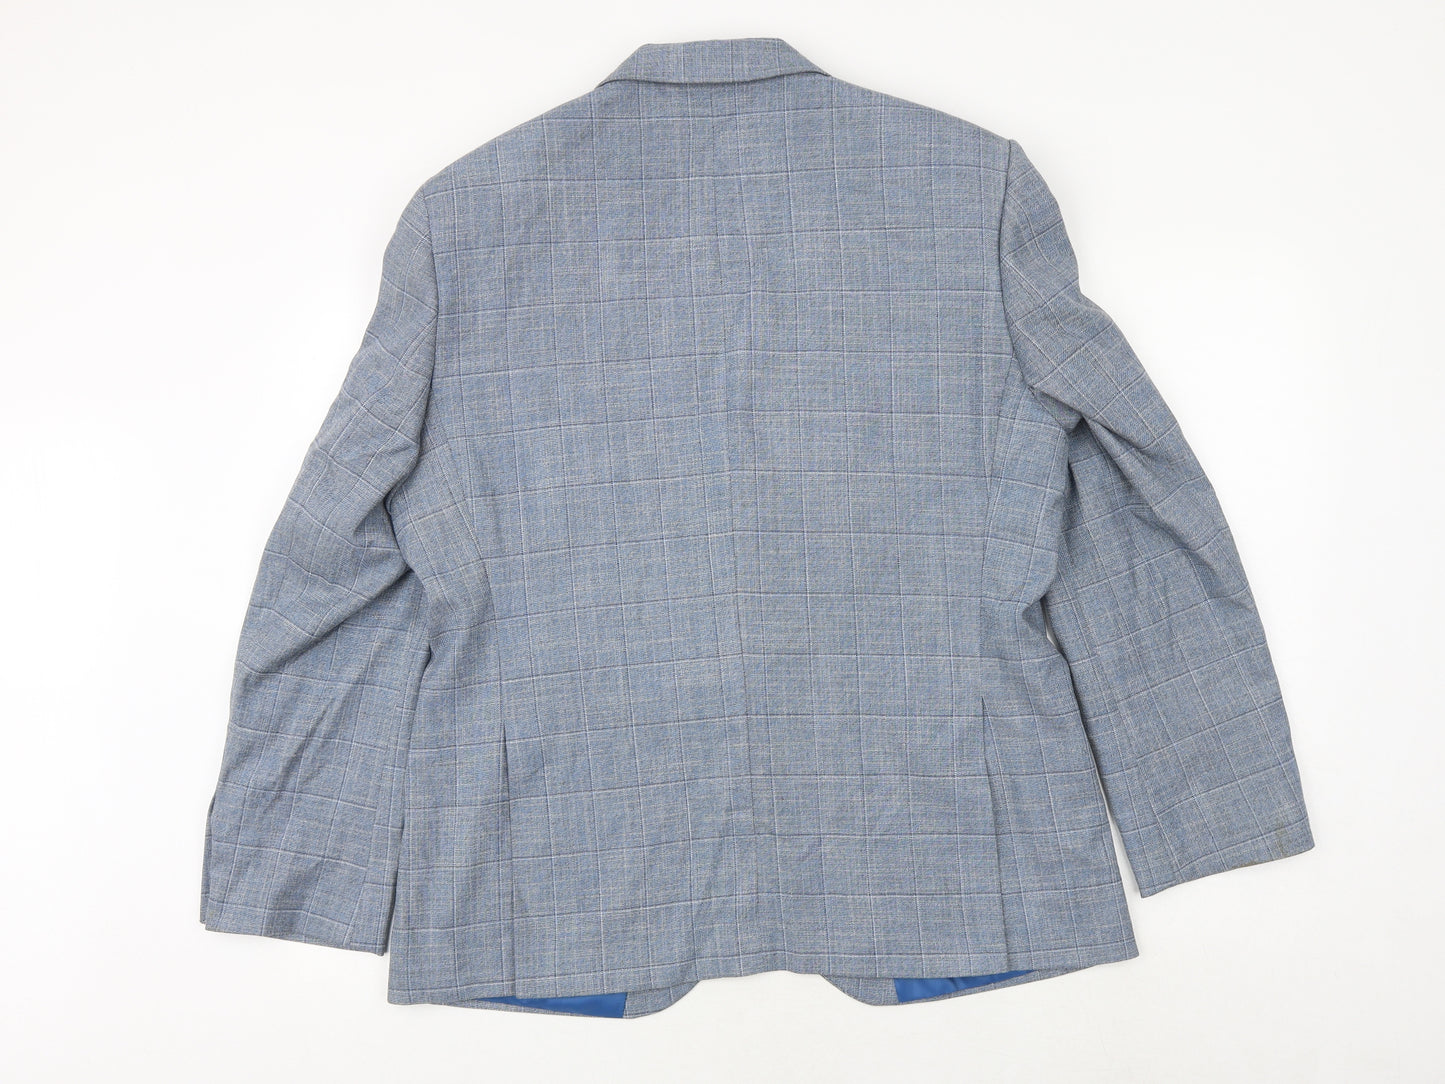 Marks and Spencer Mens Blue Plaid Polyester Jacket Suit Jacket Size 42 Regular